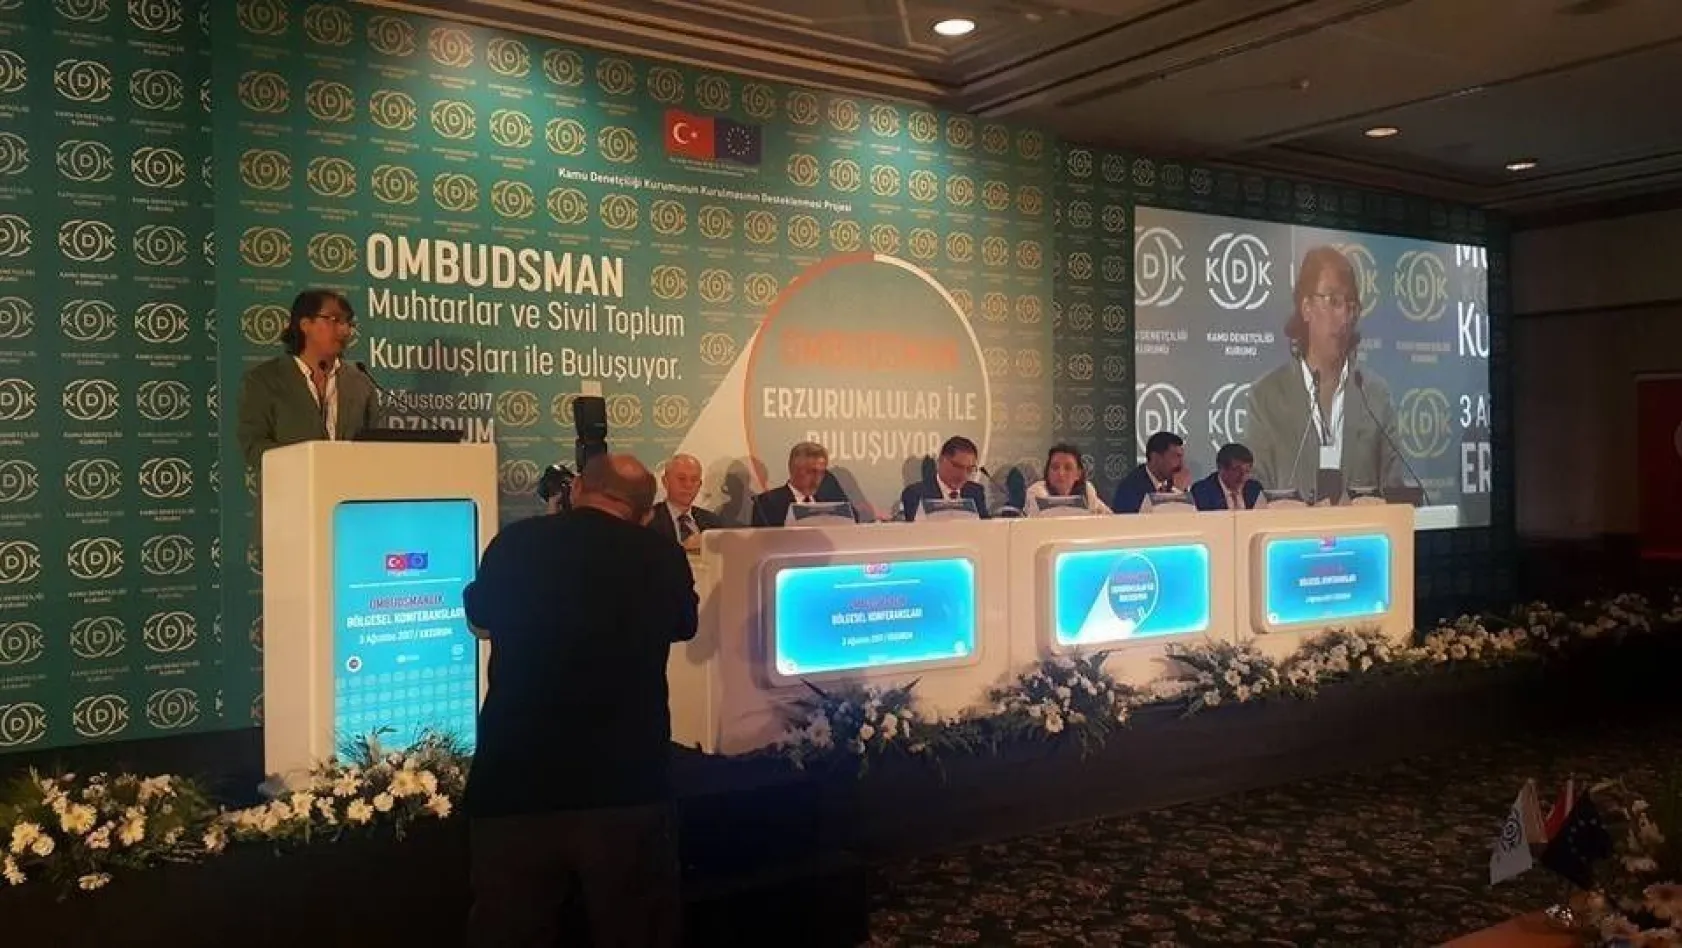 TDED Erzurum yönetim kurulu üyesi Aydemir: 'Ombudsman şeklindeki isimlendirmenin derhal Türkçe karşılığının kullanılmasını talep ediyoruz'
